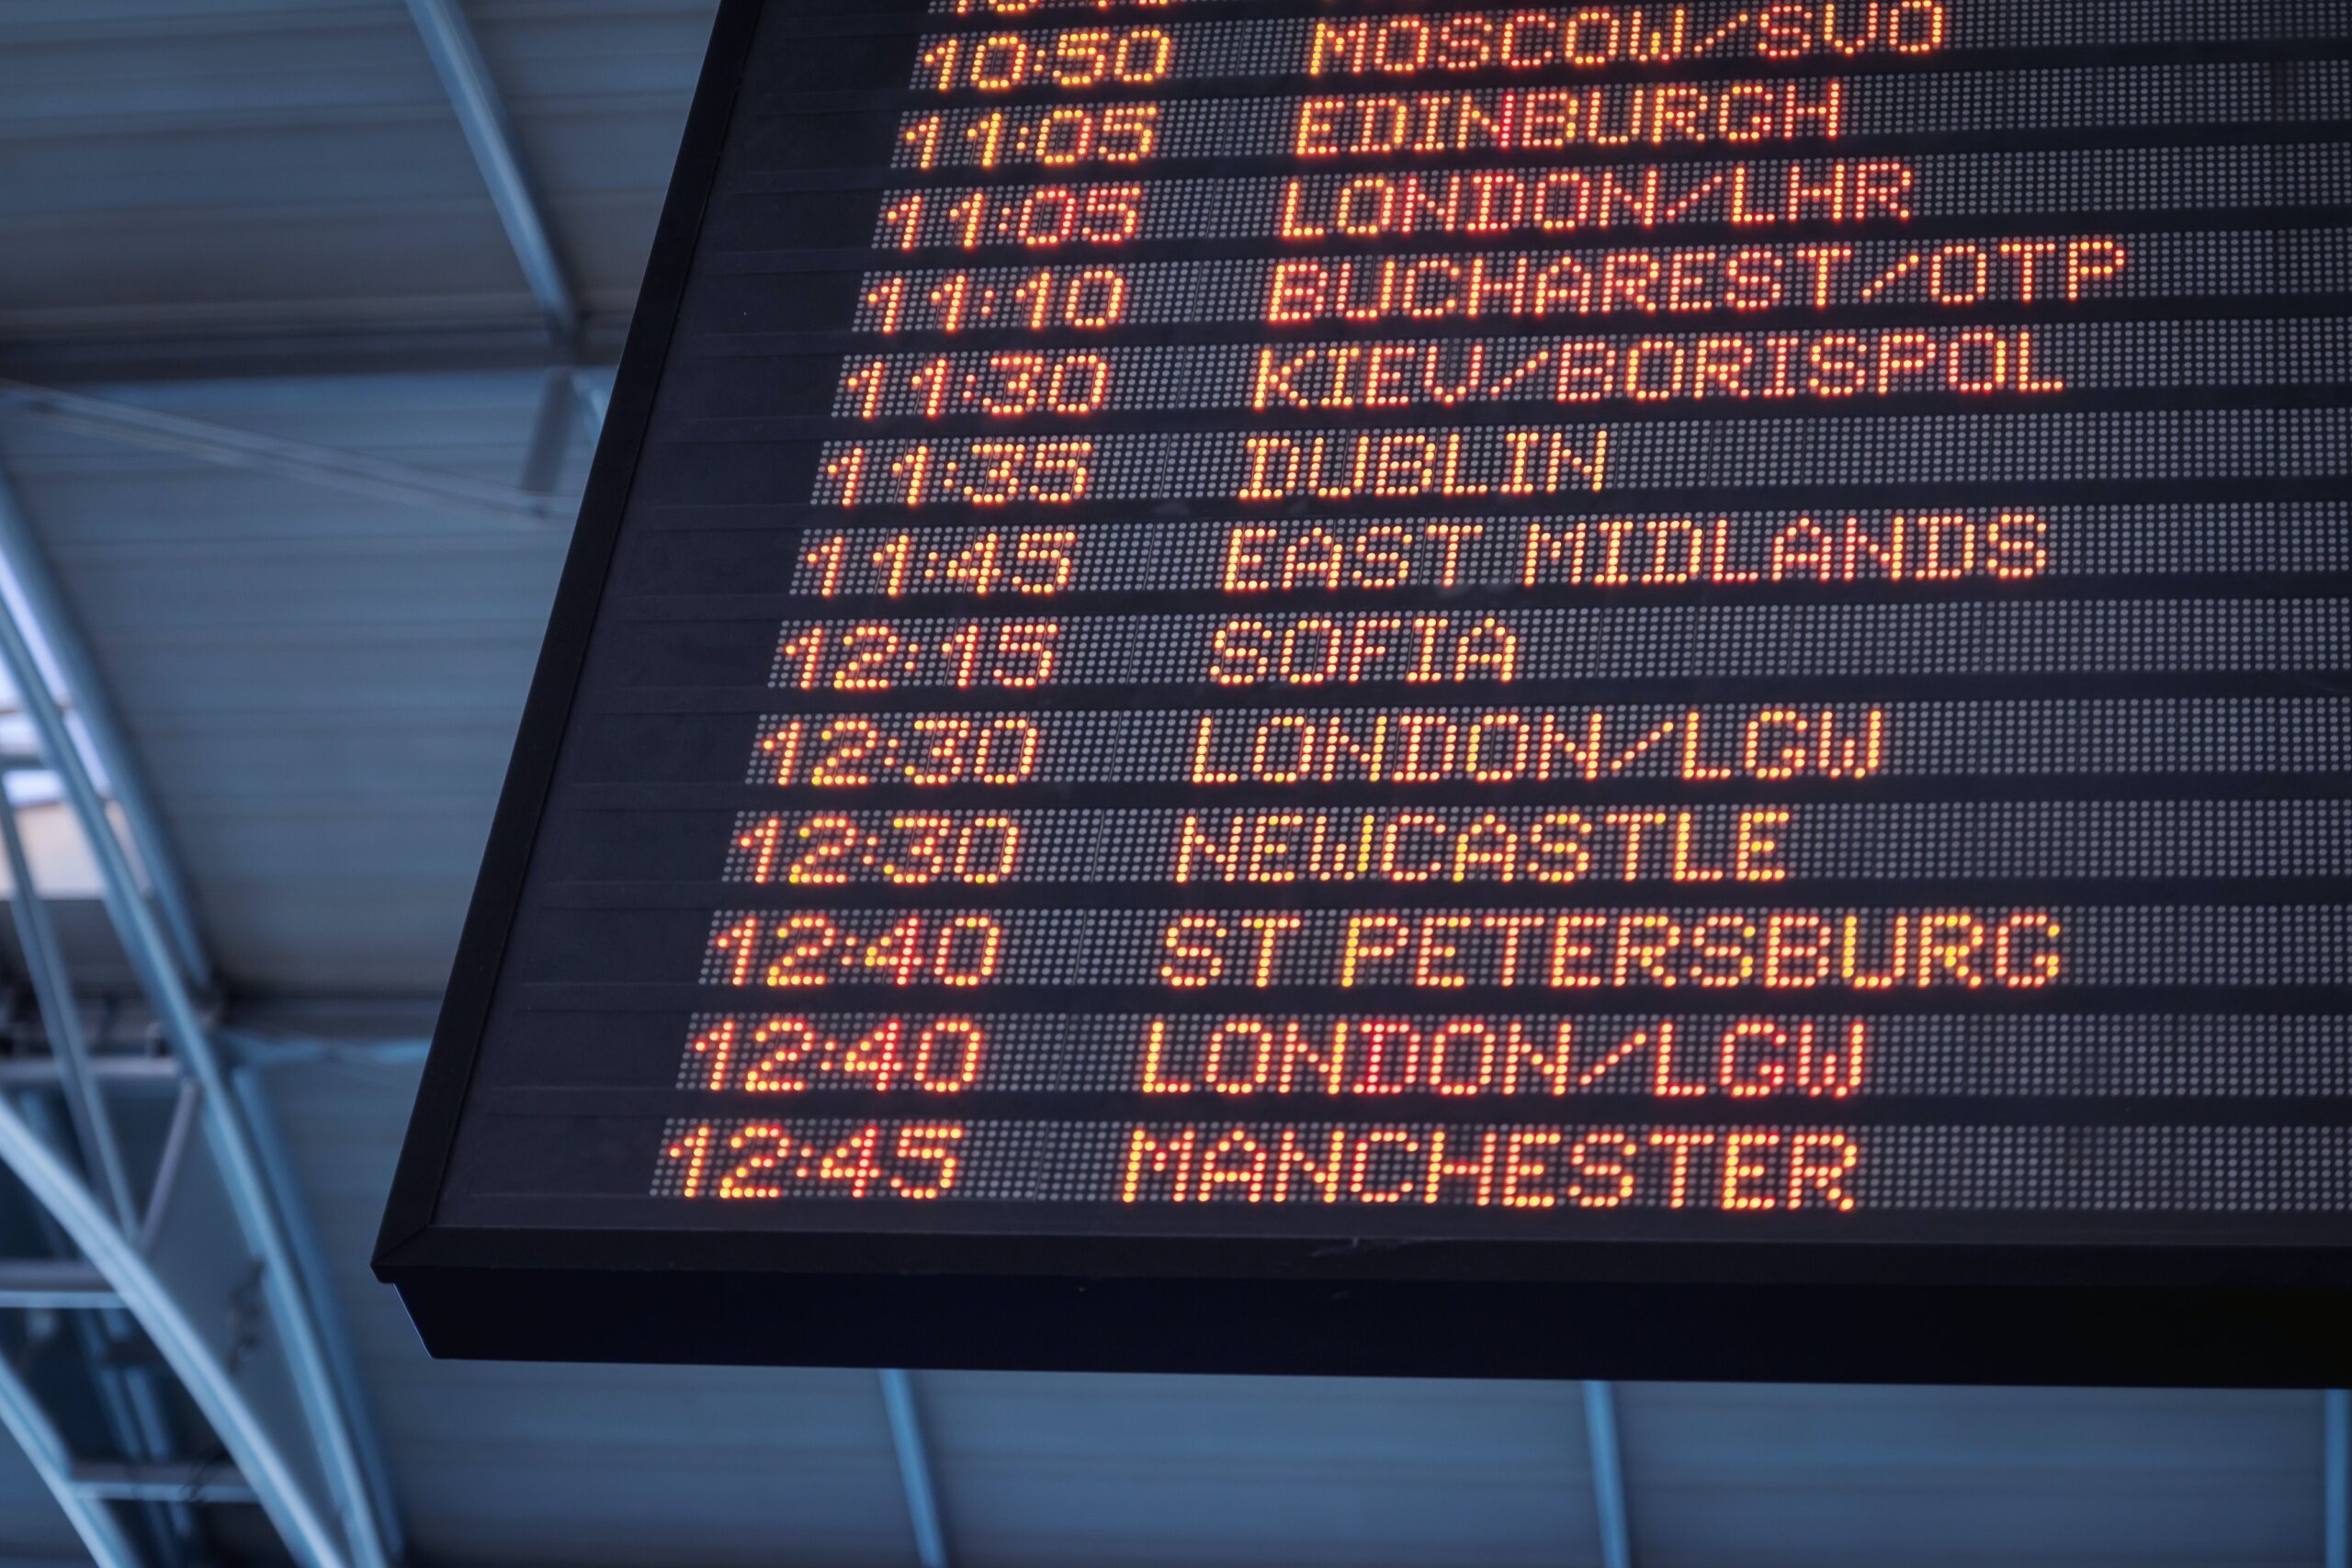 panneau d'affichage des destinations dans un aéroport